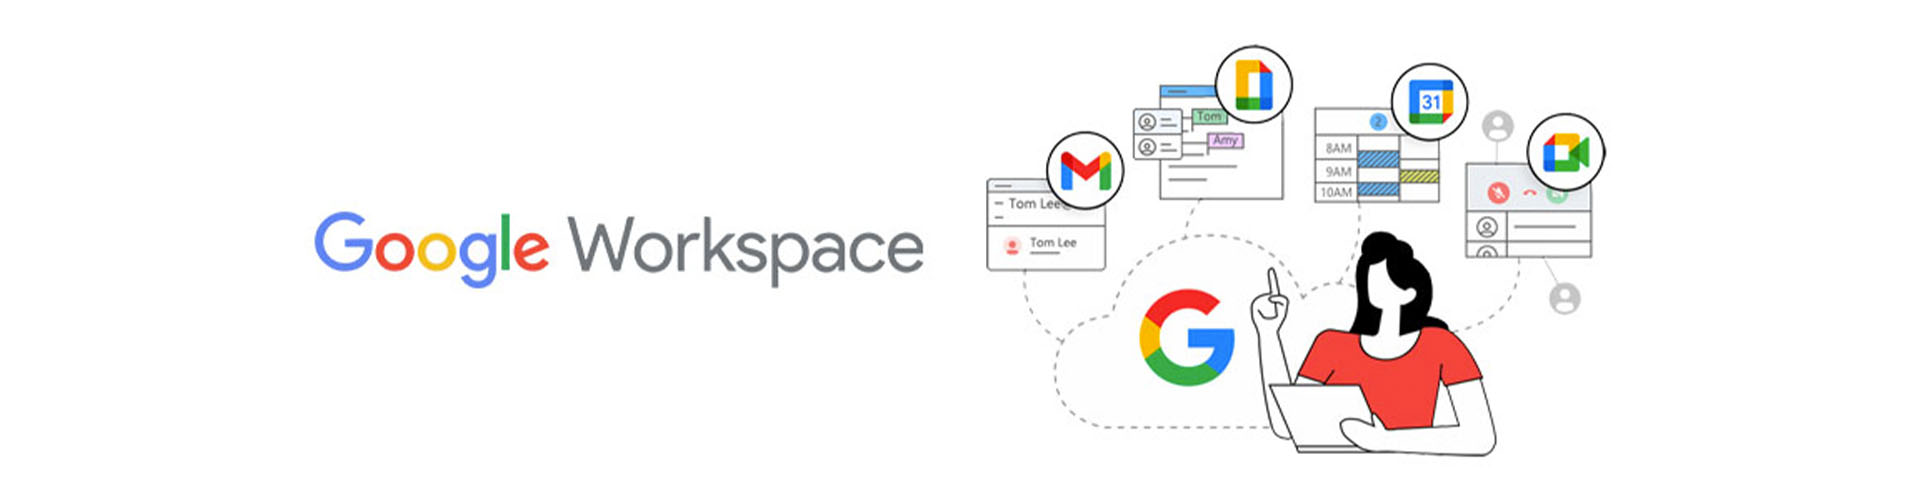 Sự khác biệt giữa G Suite và Google Workspace